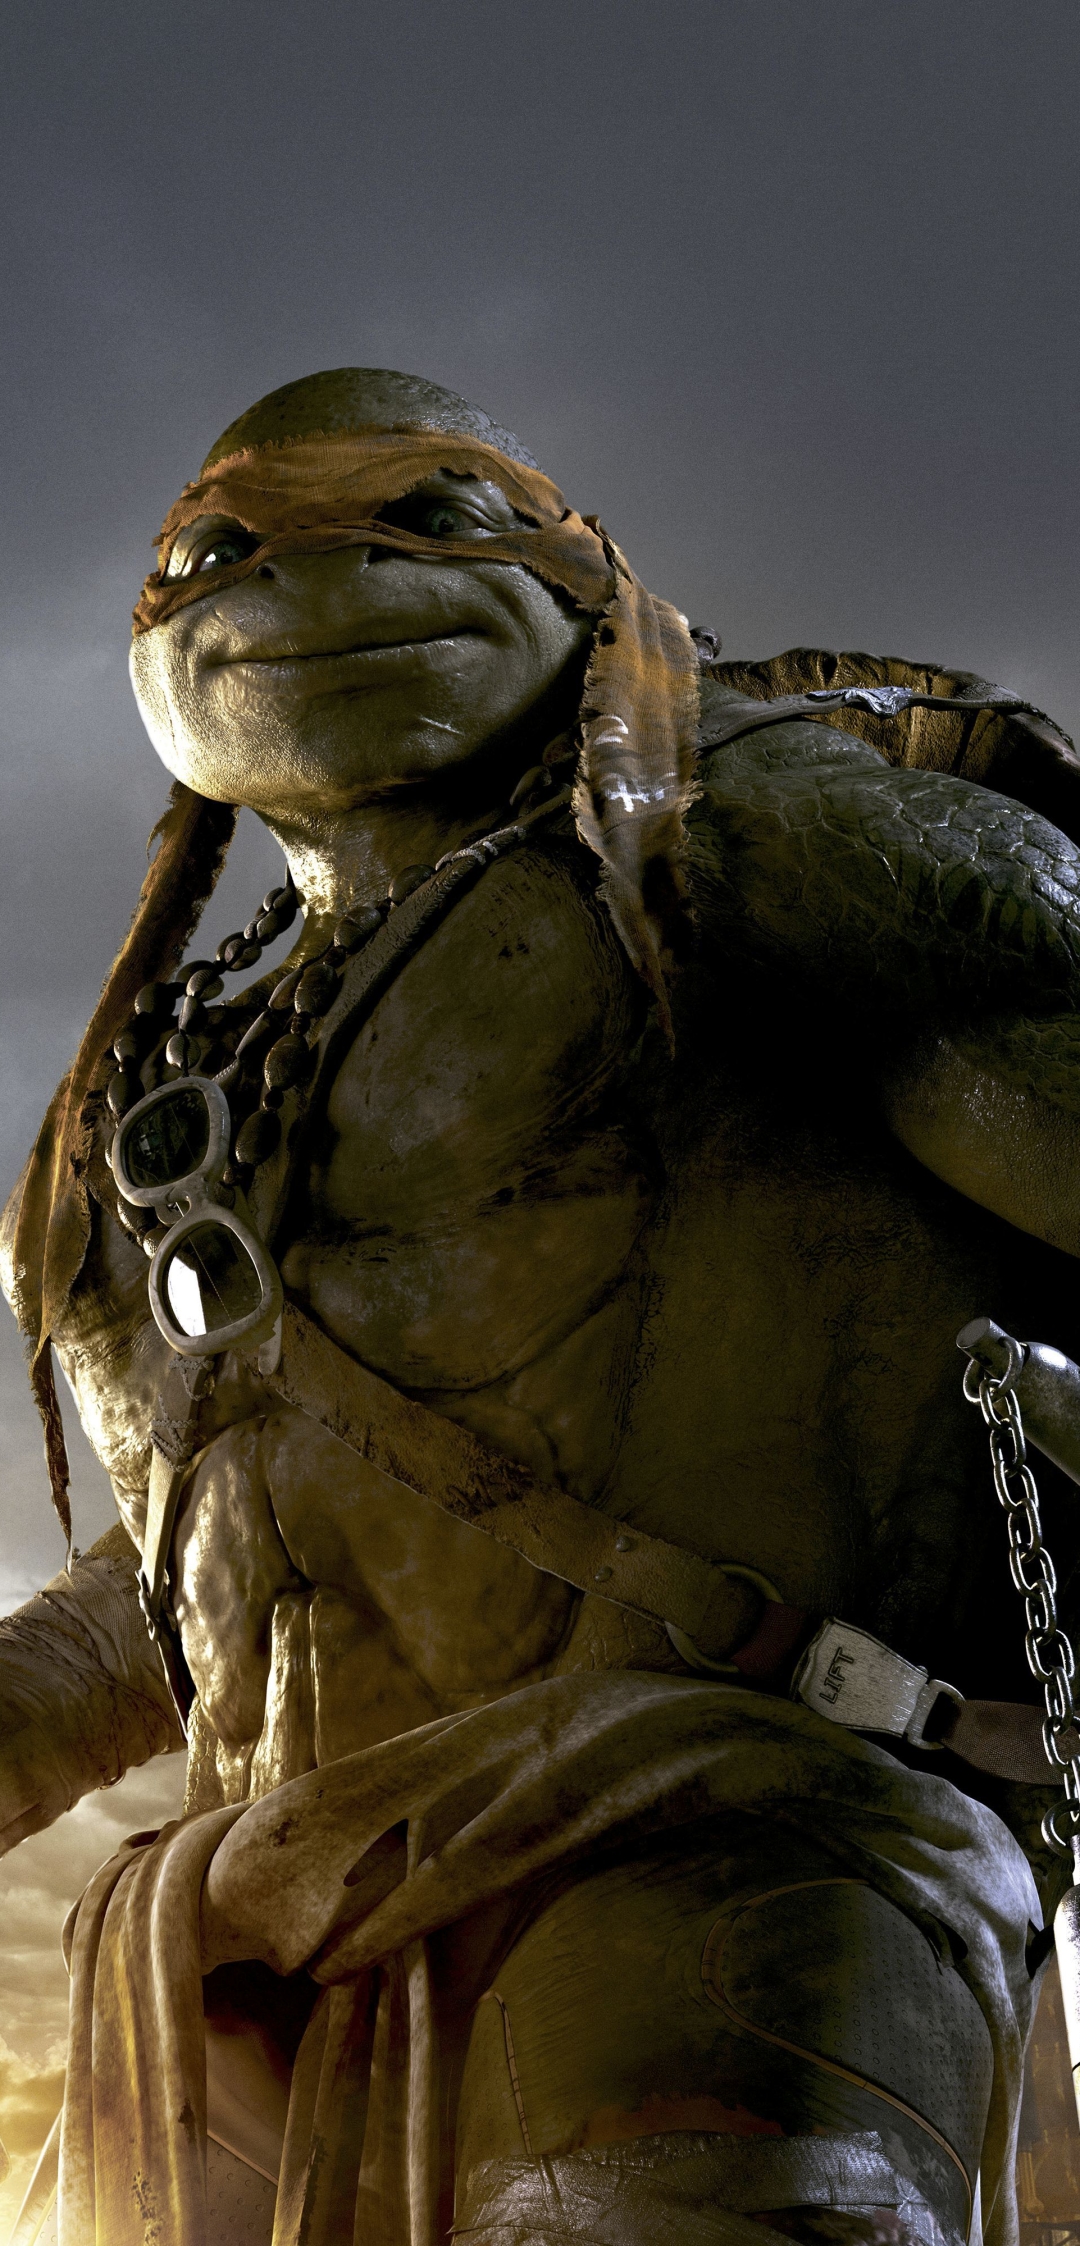 Descarga gratuita de fondo de pantalla para móvil de Películas, Las Tortugas Ninja, Ninja Turtles (2014).